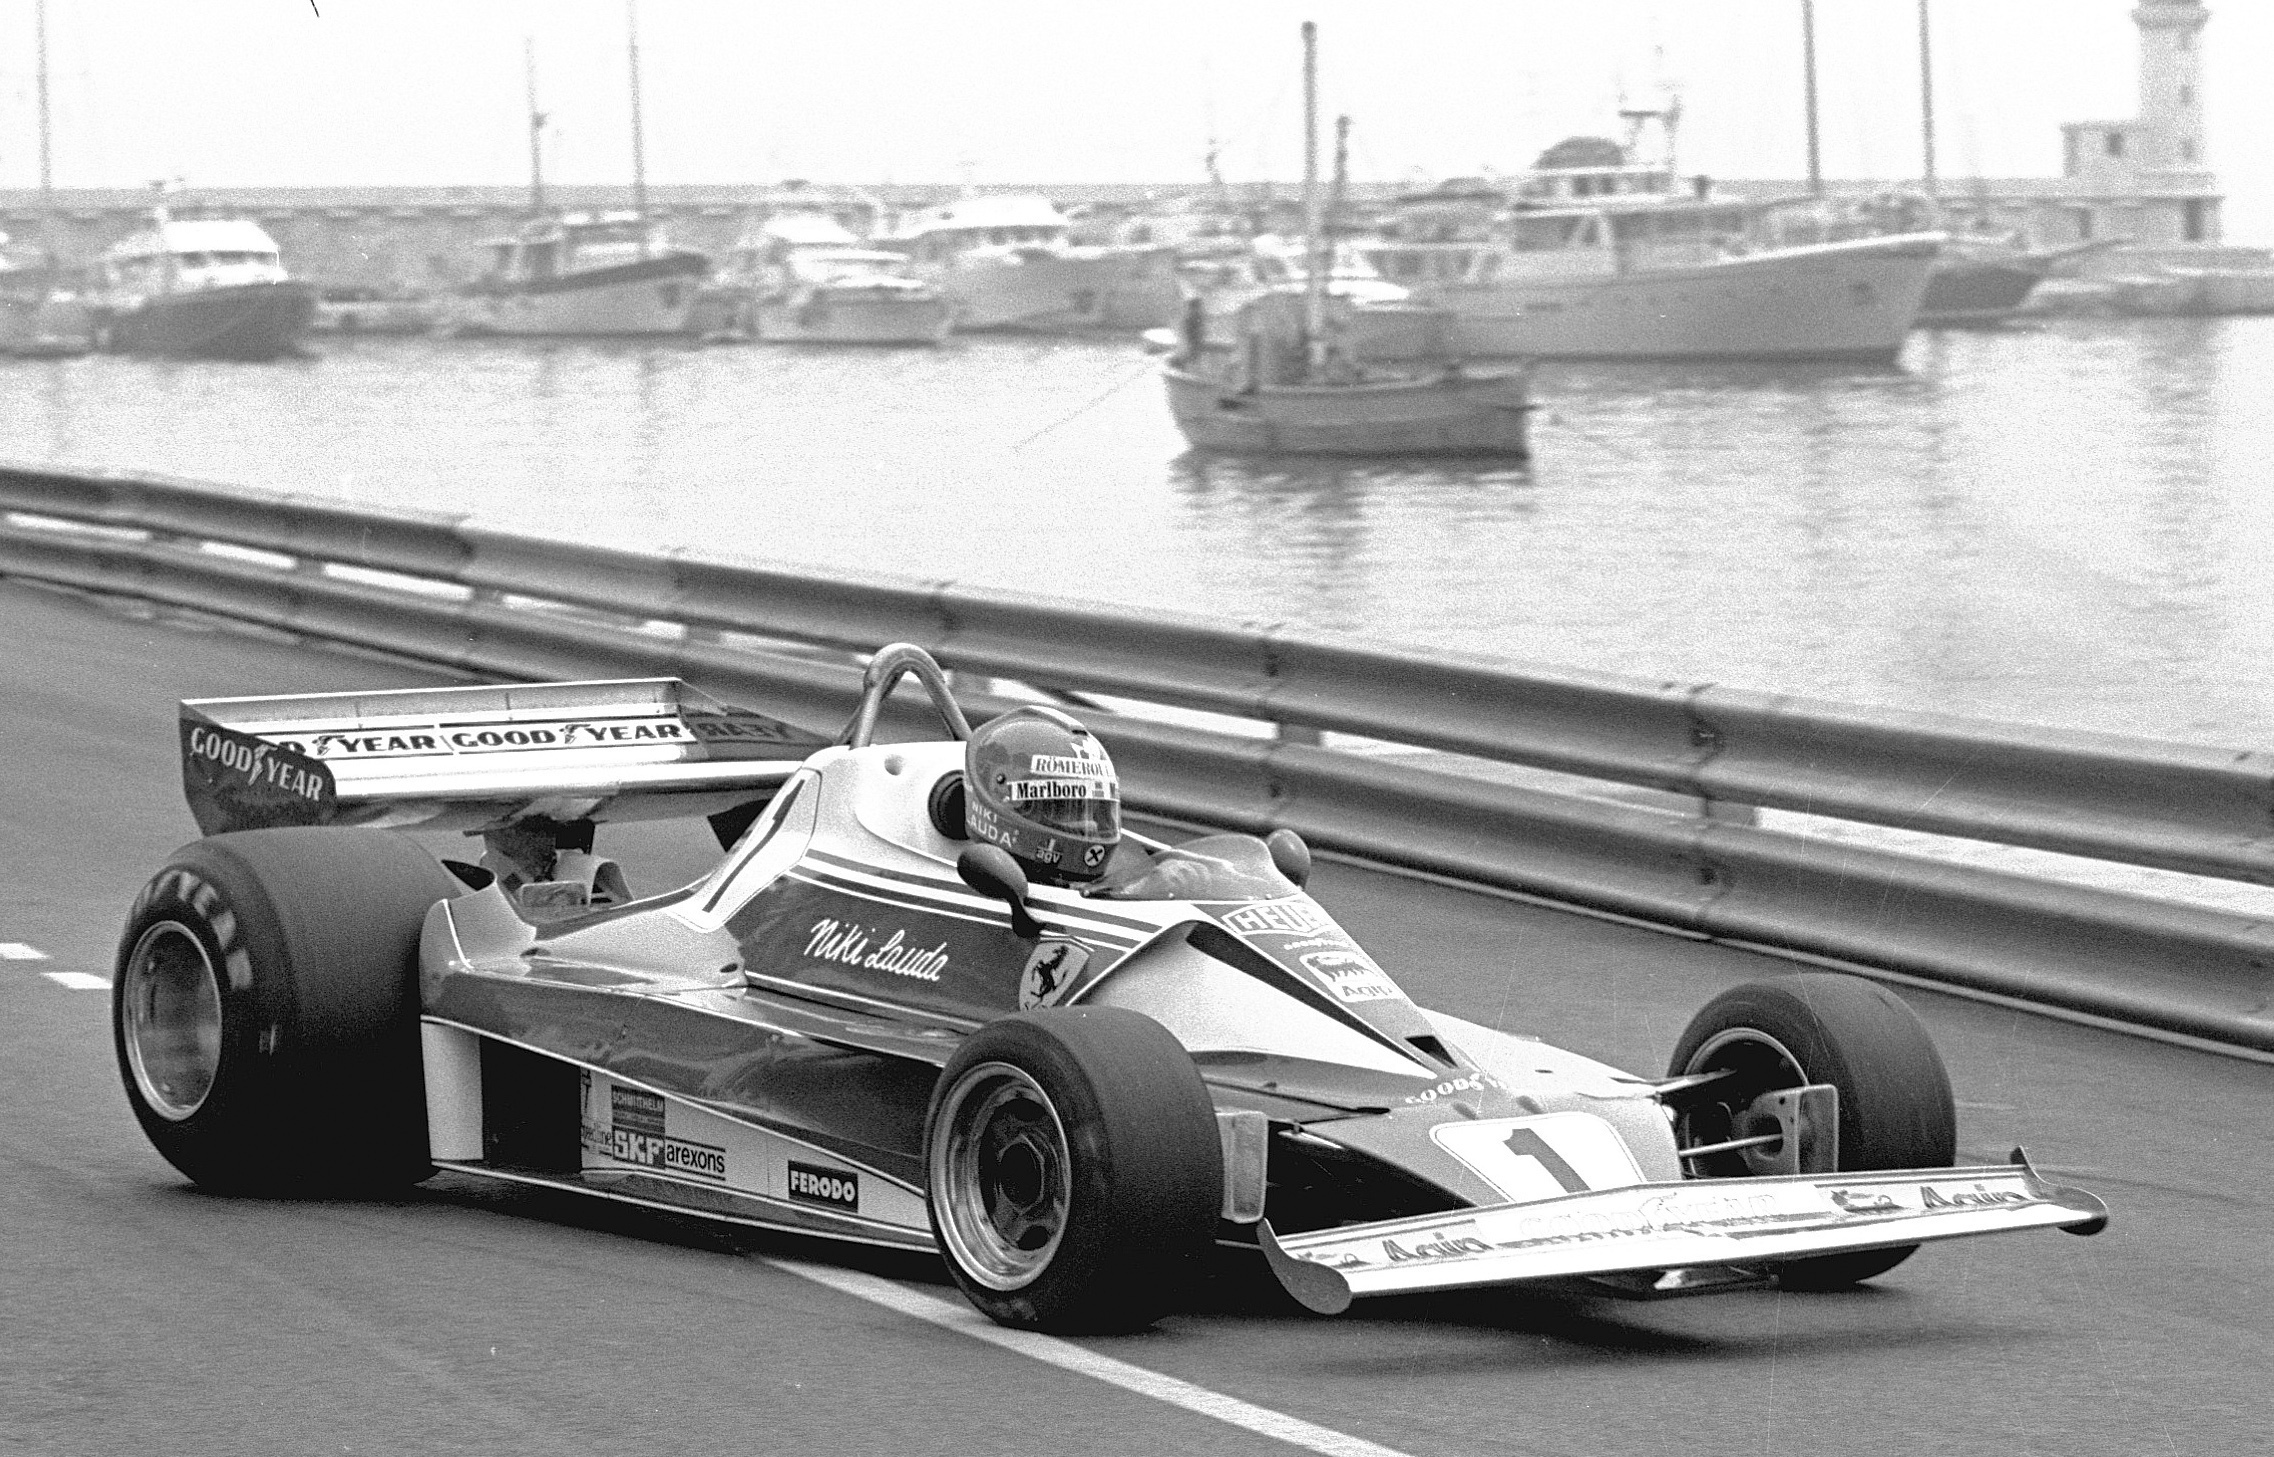 Niki Lauda testing in the 1976 Monaco Grand Prix